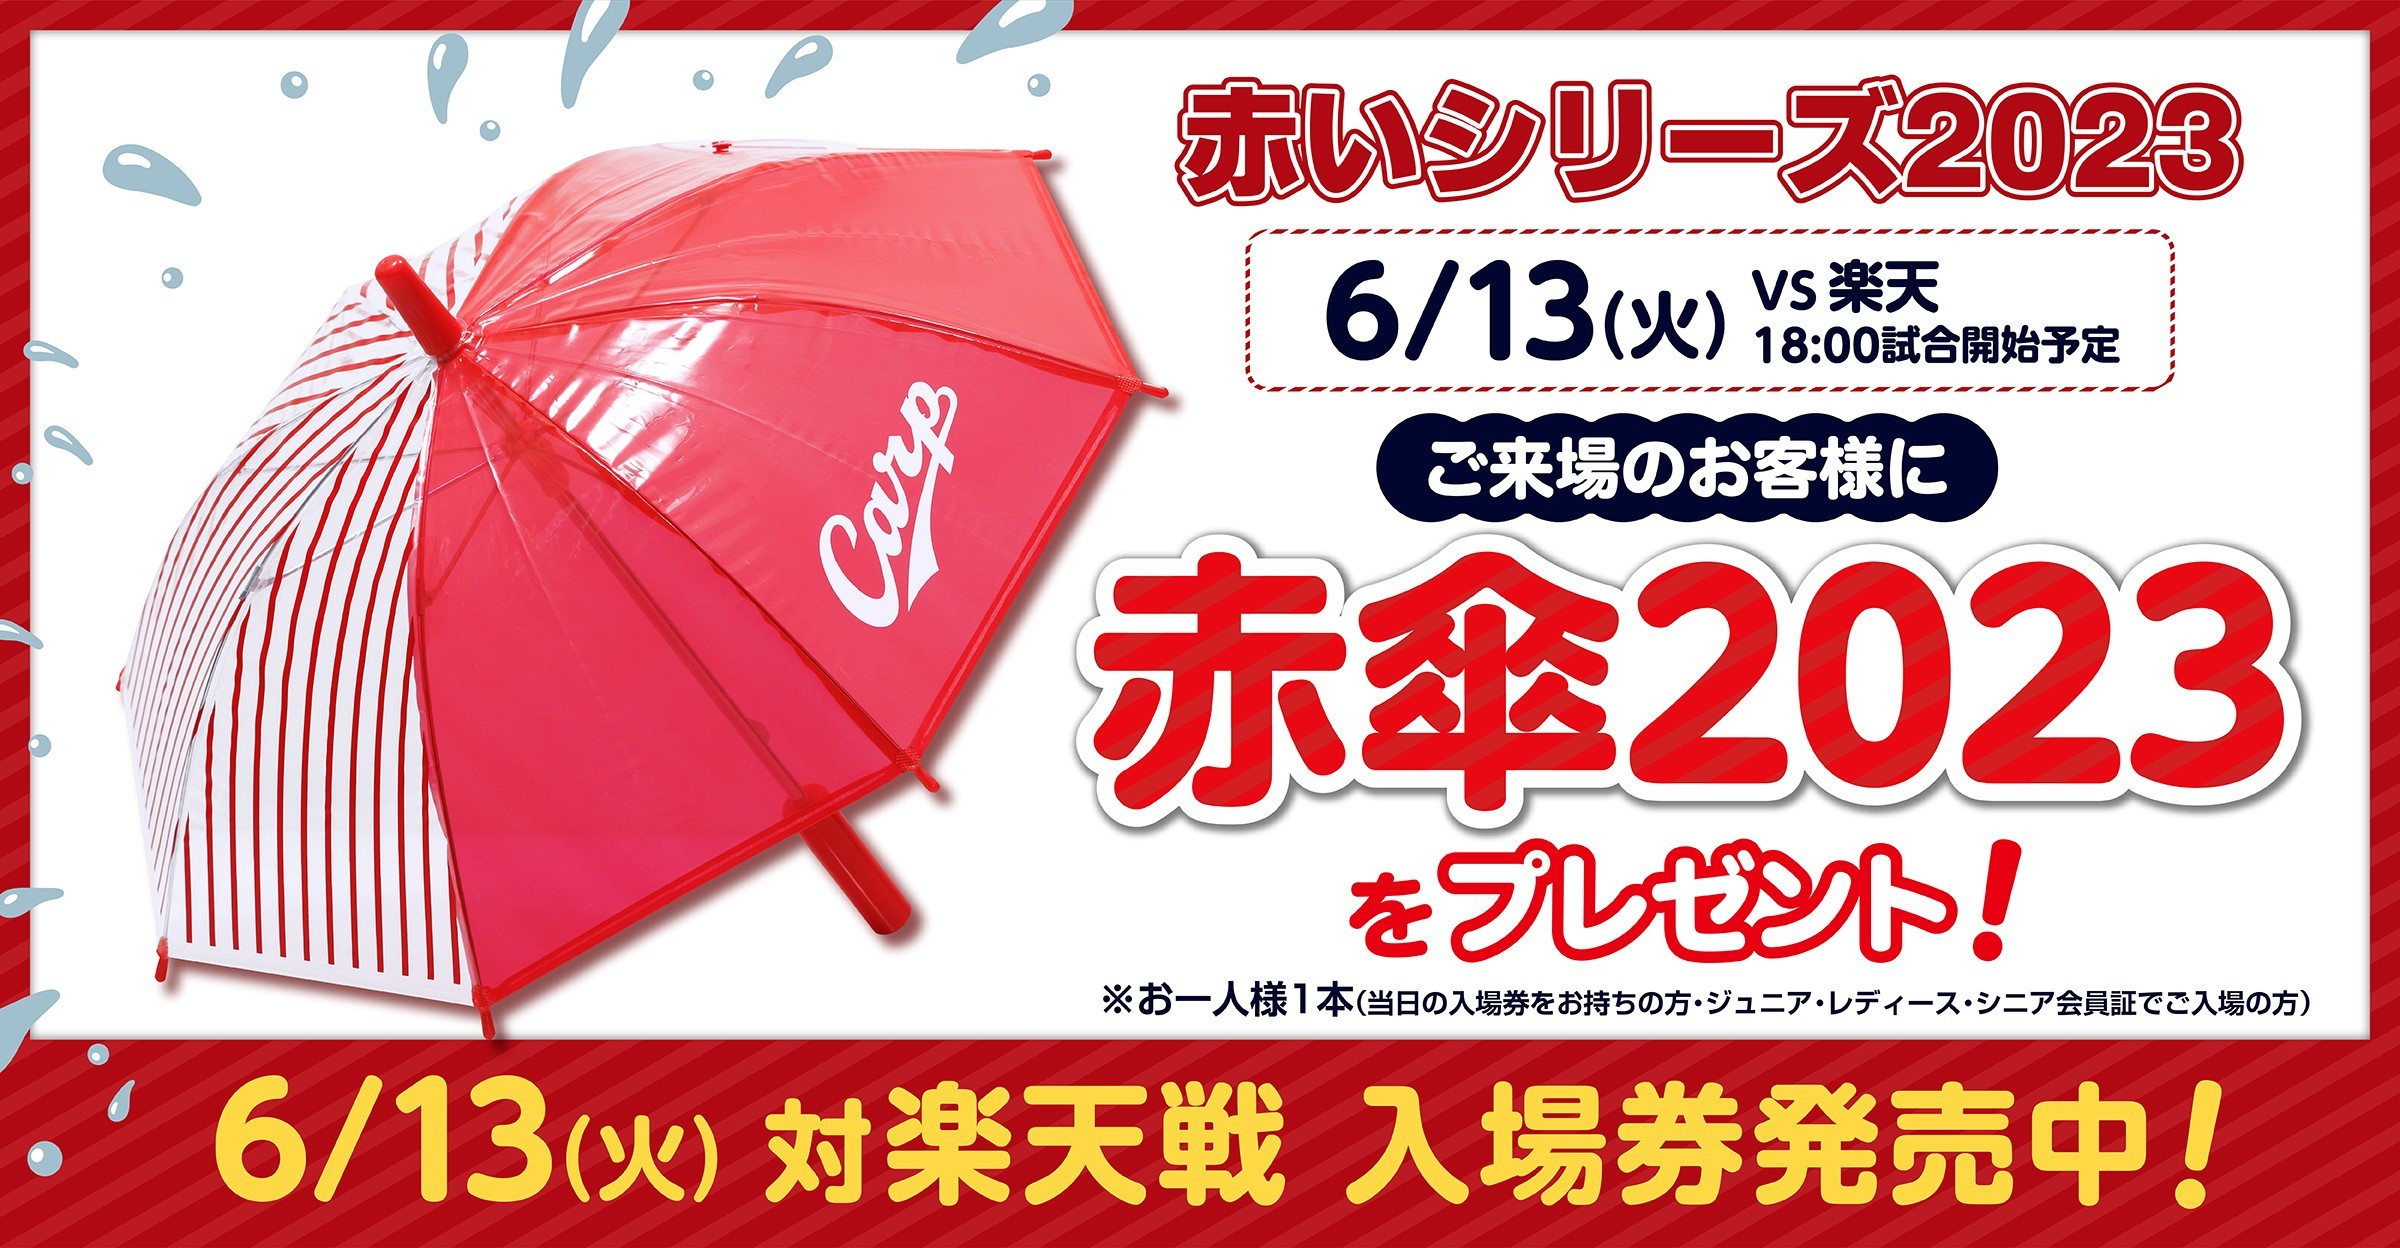 『赤いシリーズ2023』の来場者全員に「赤傘20223」をプレゼントする